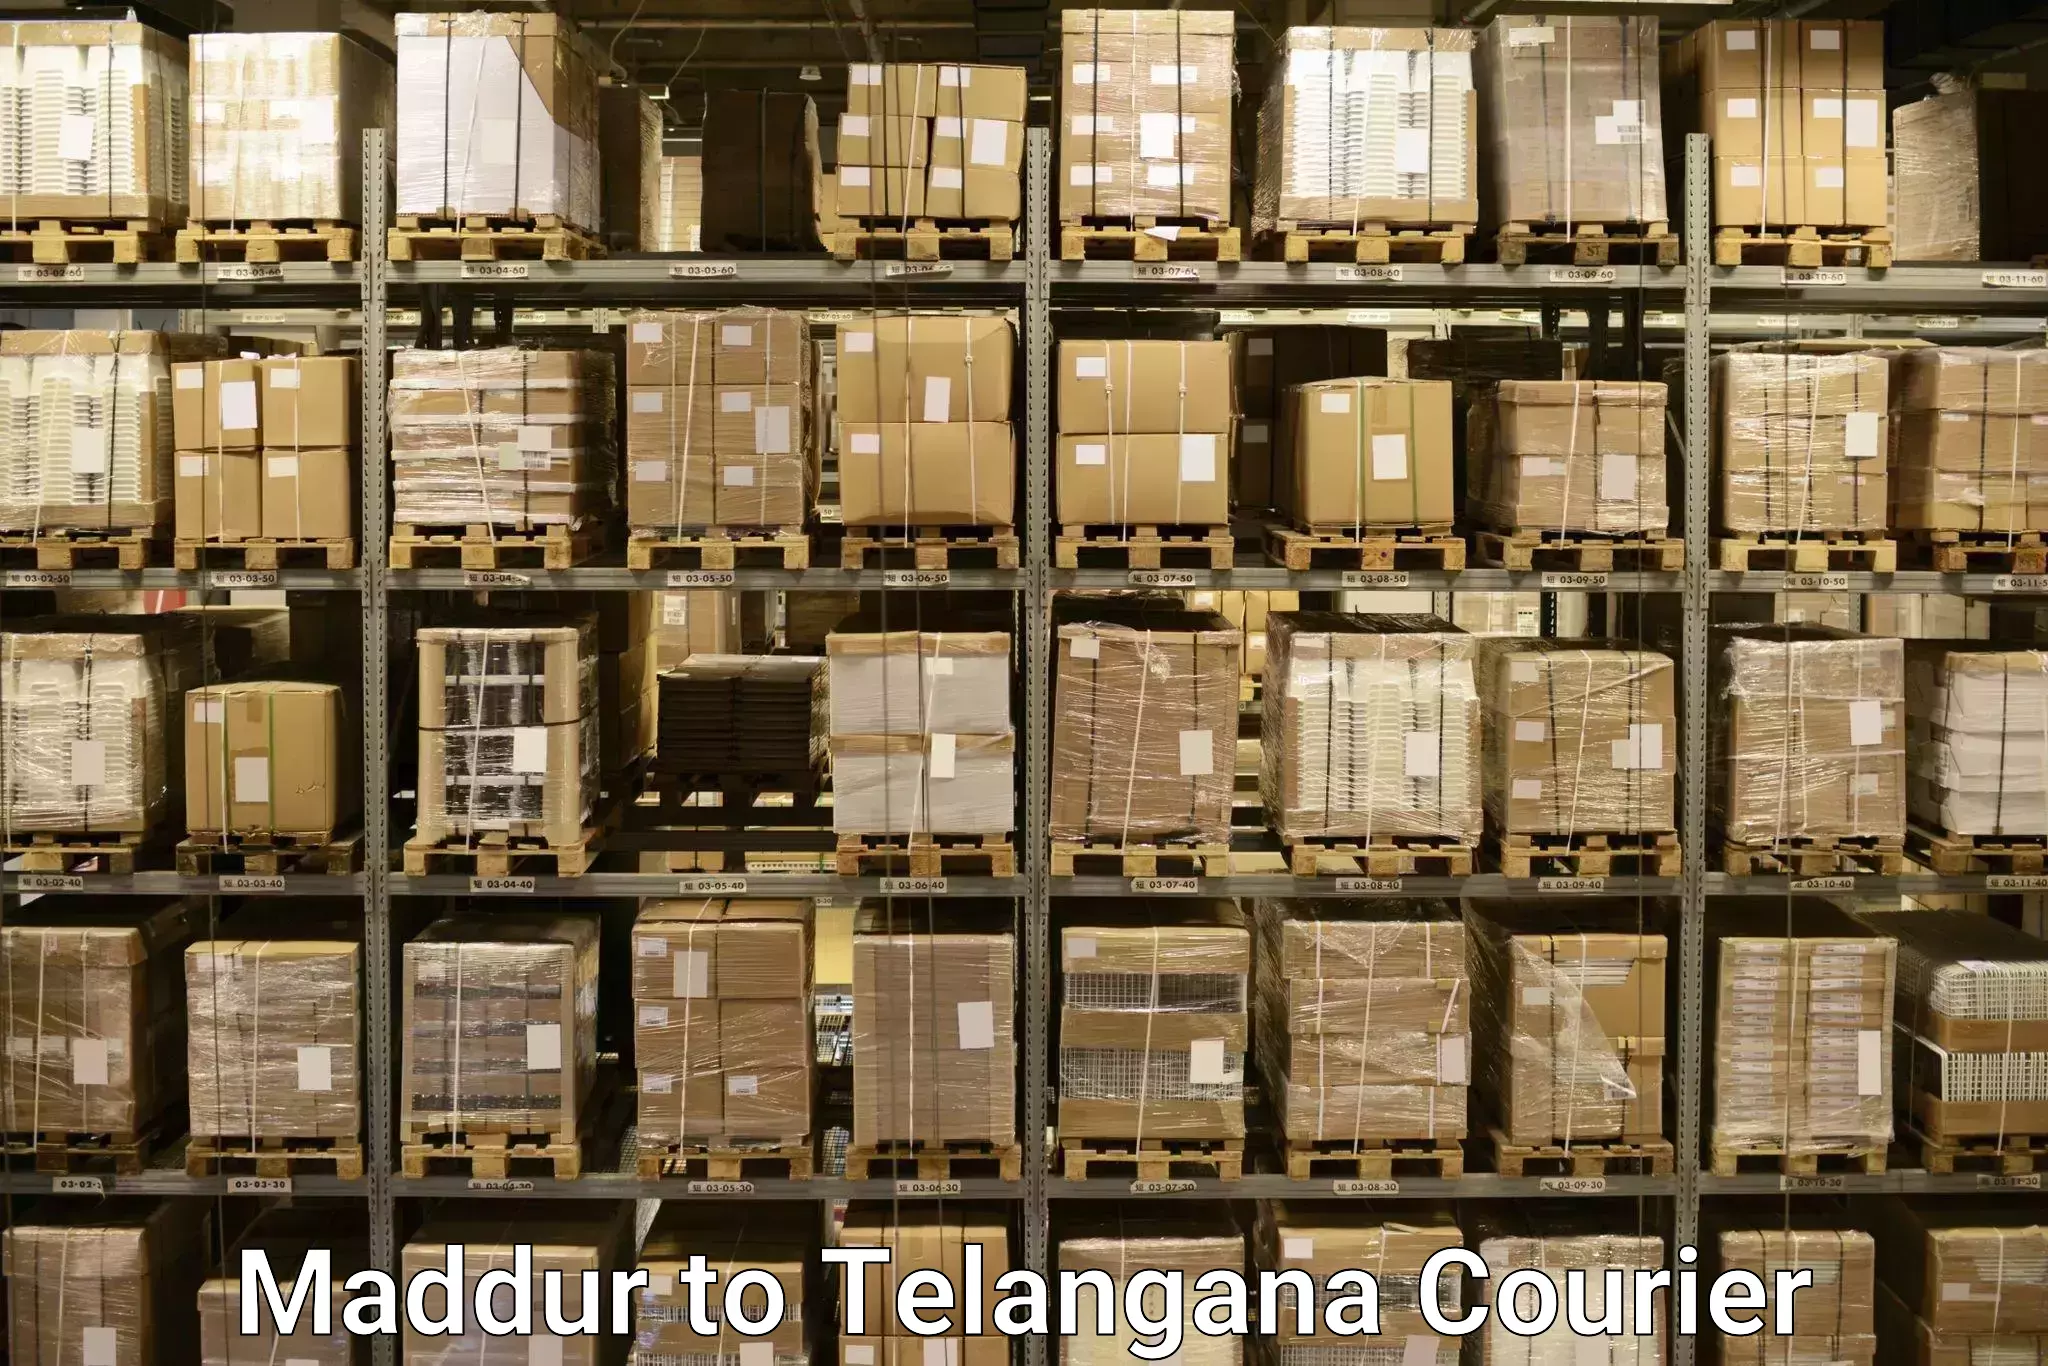 Baggage shipping logistics in Maddur to Nalgonda